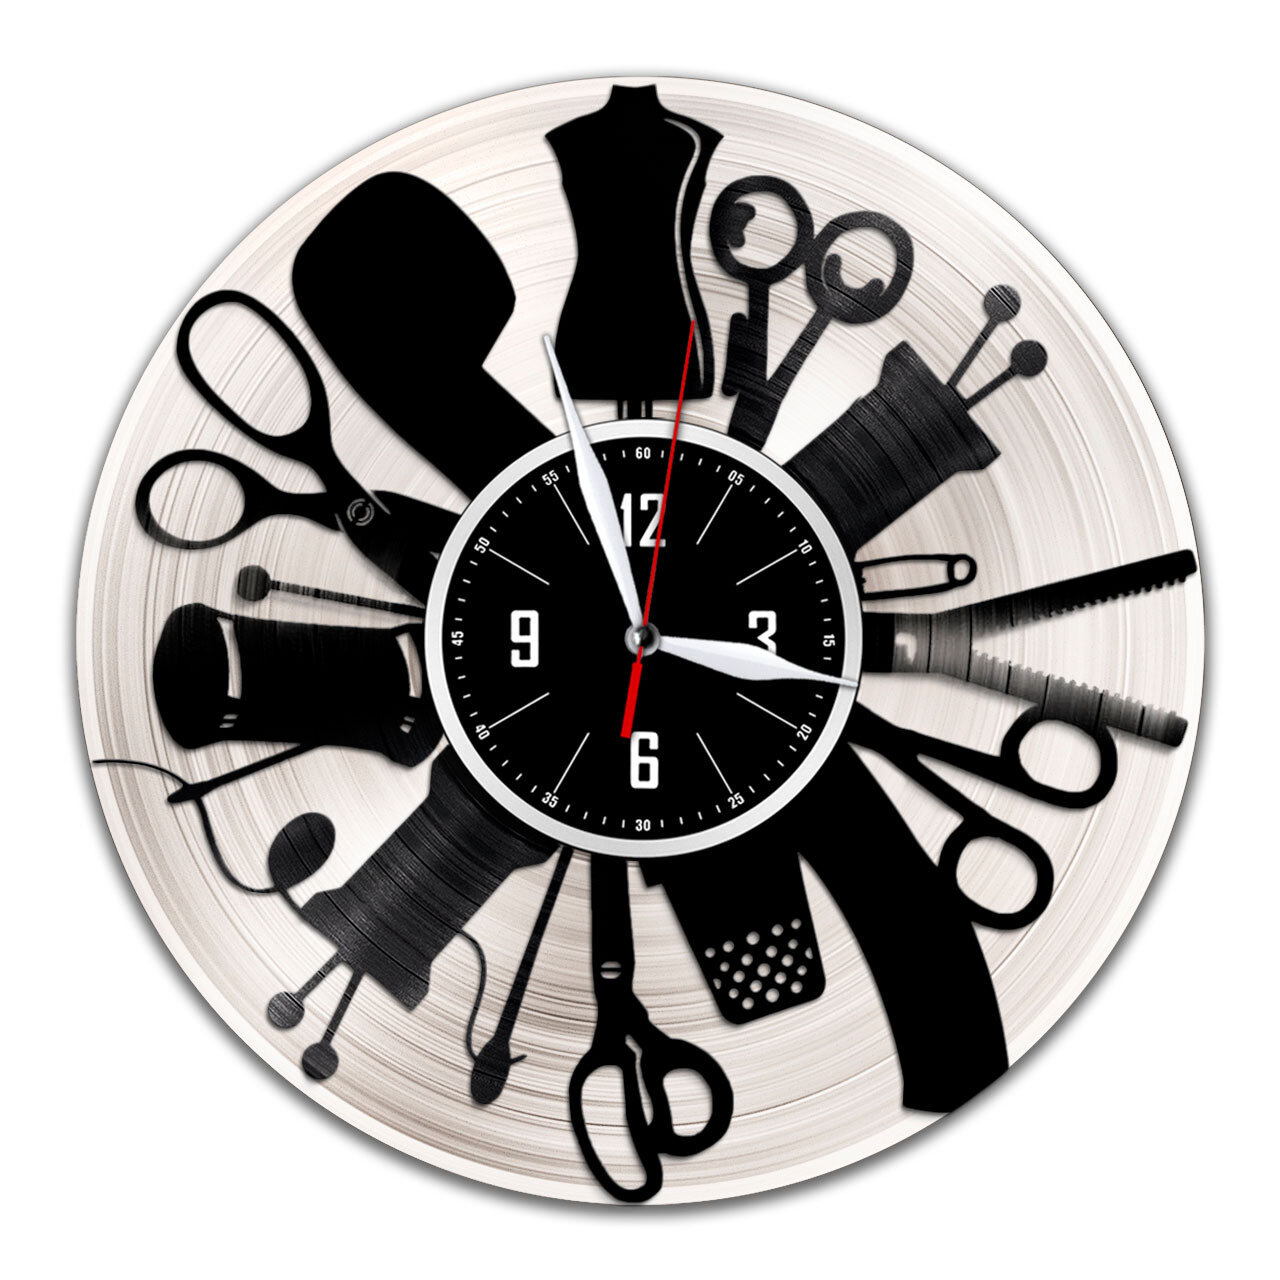 Портной - настенные часы из виниловой пластинки (с серебряной подложкой)